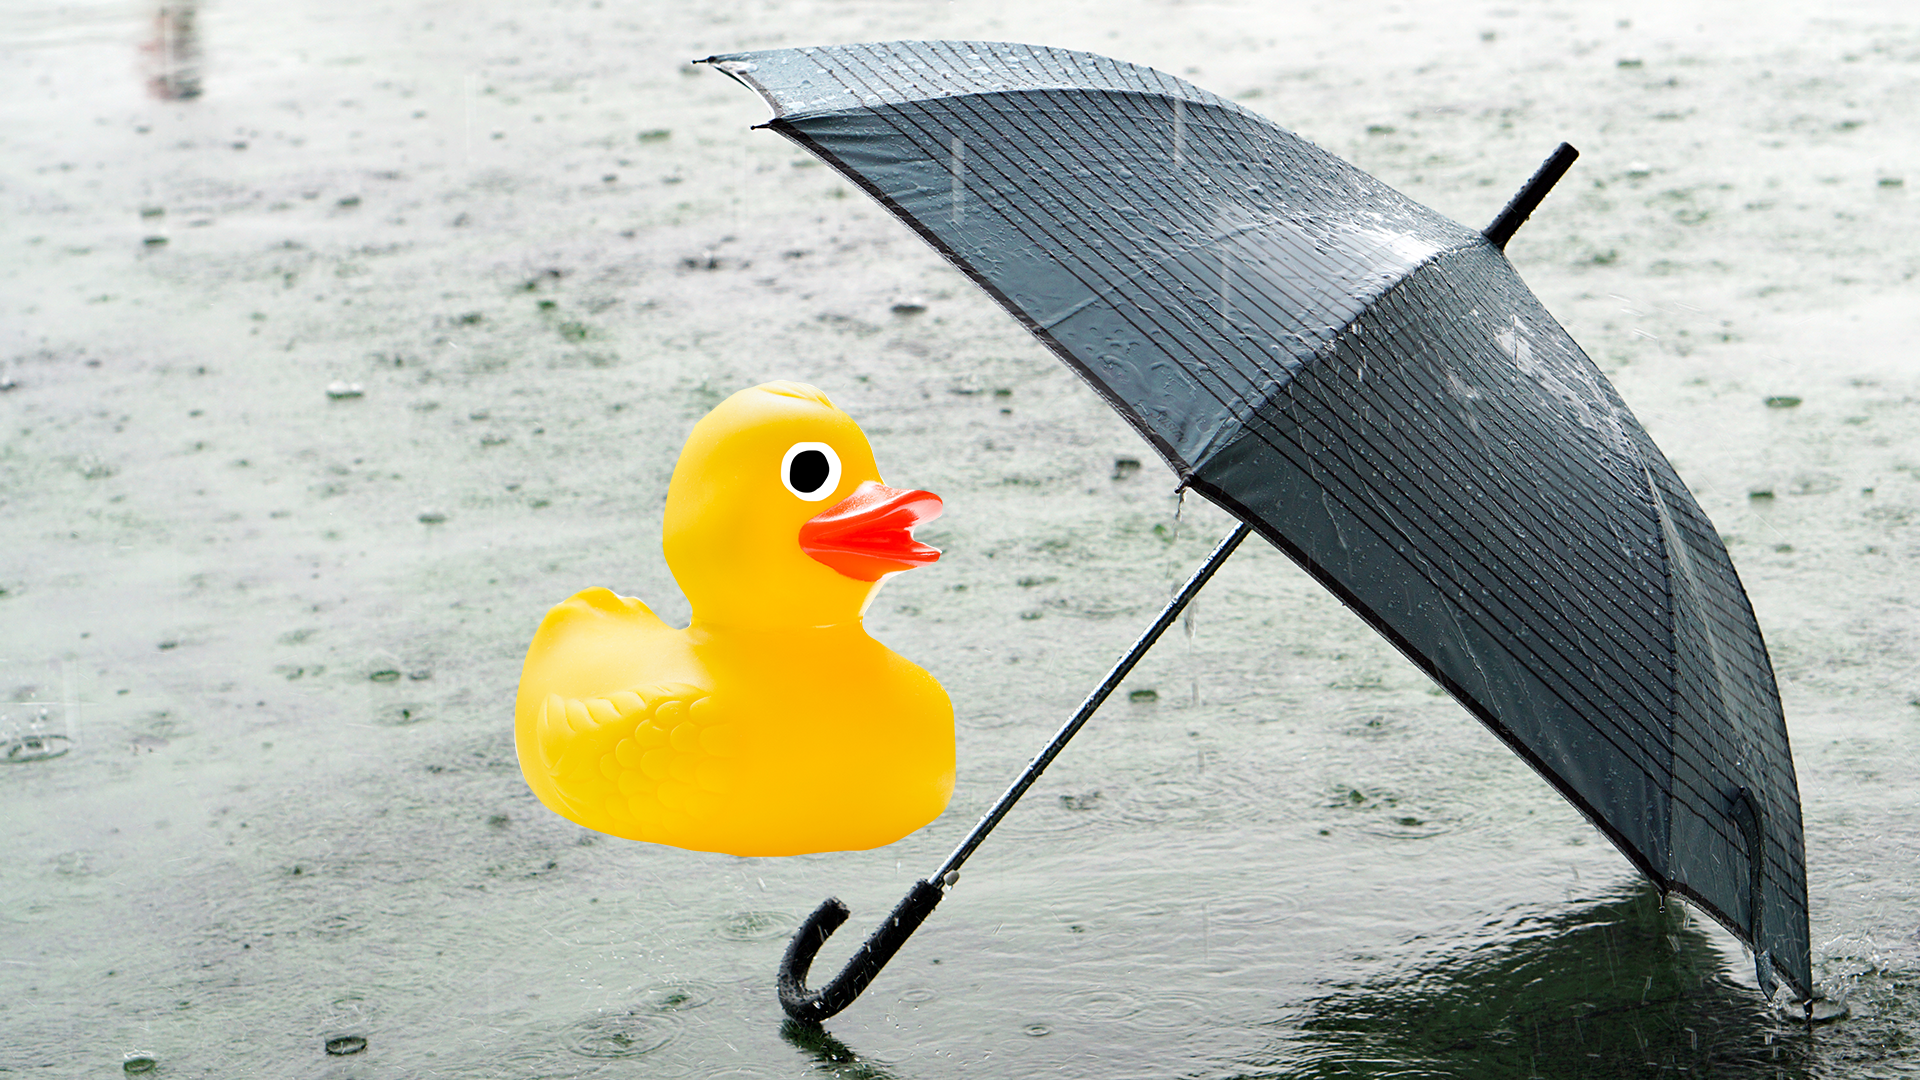 Umbrella in rain with rubber duck 